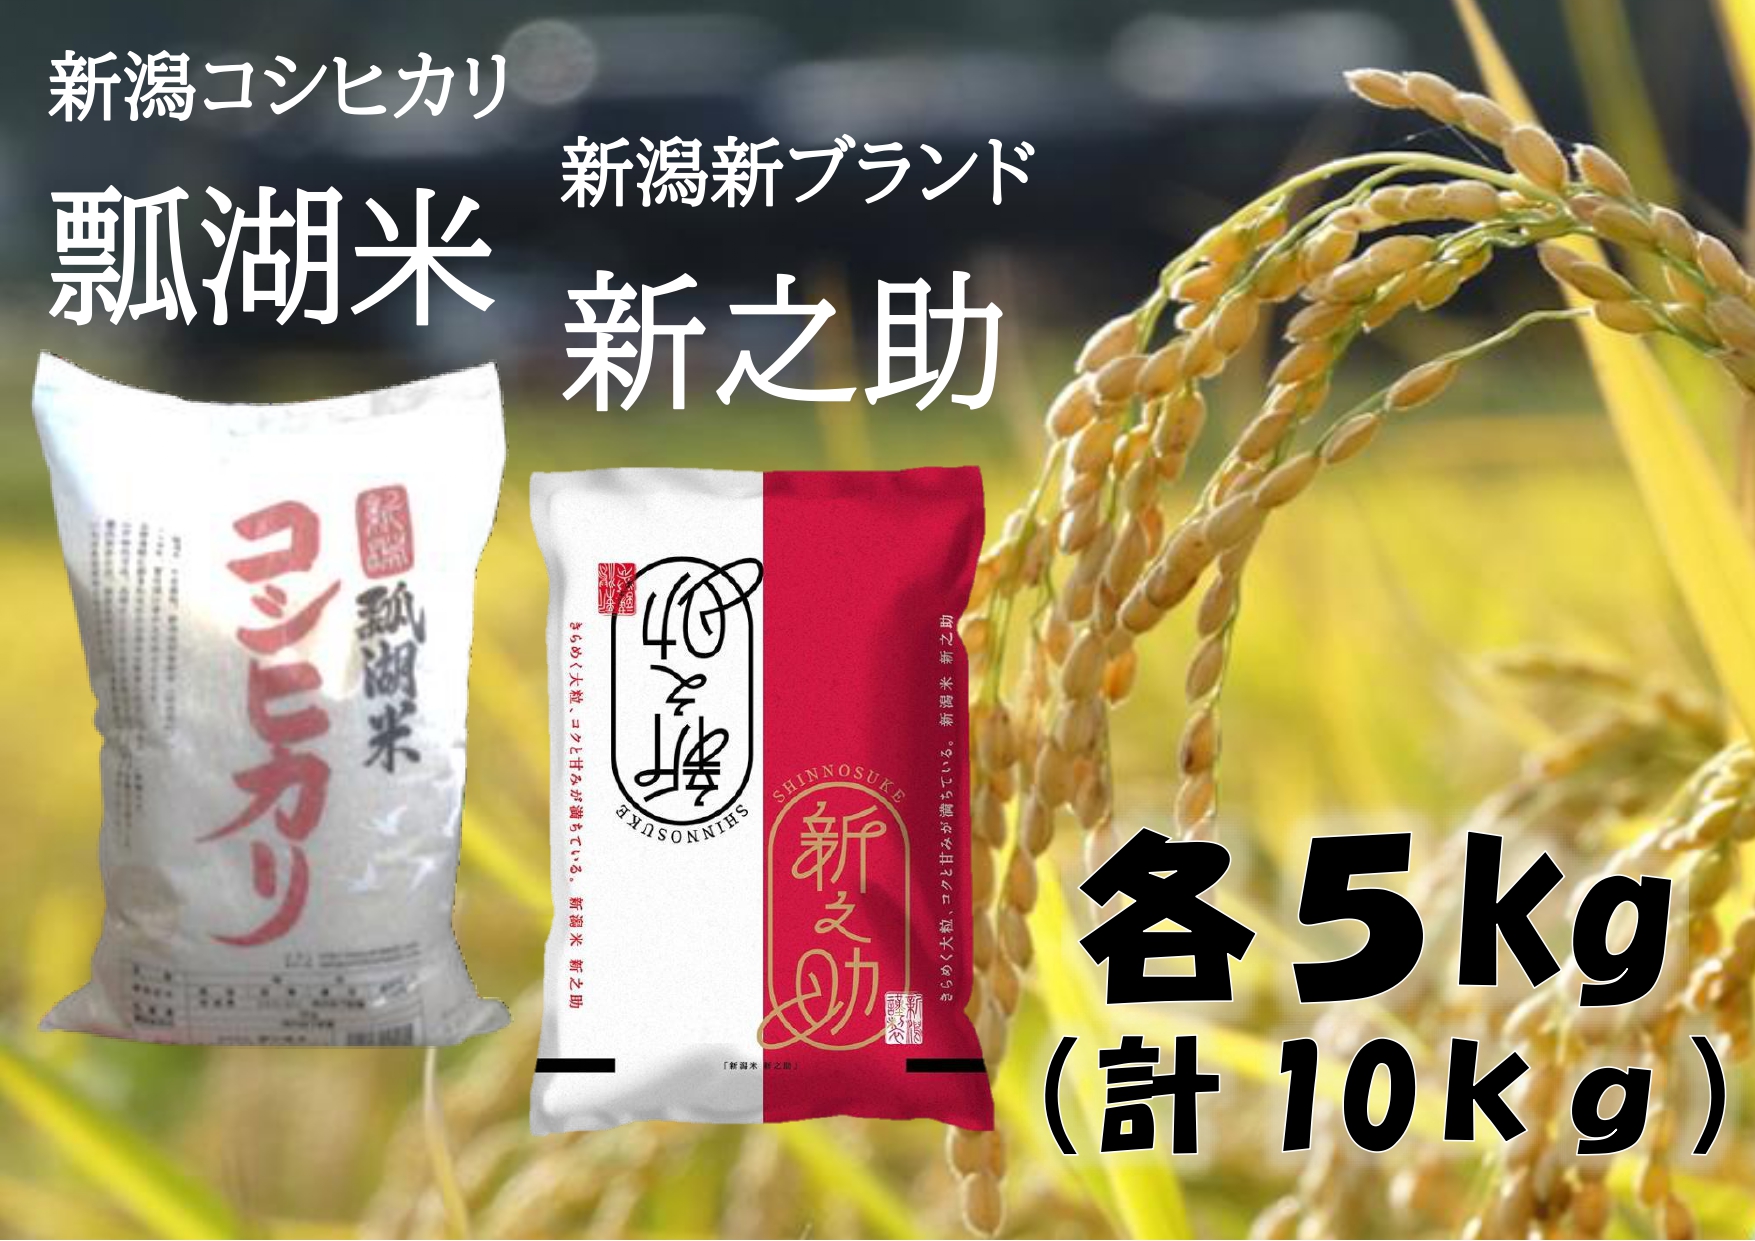 新潟産コシヒカリ「瓢湖米」&「新之助」セット10kg(各5kg) 1N08015